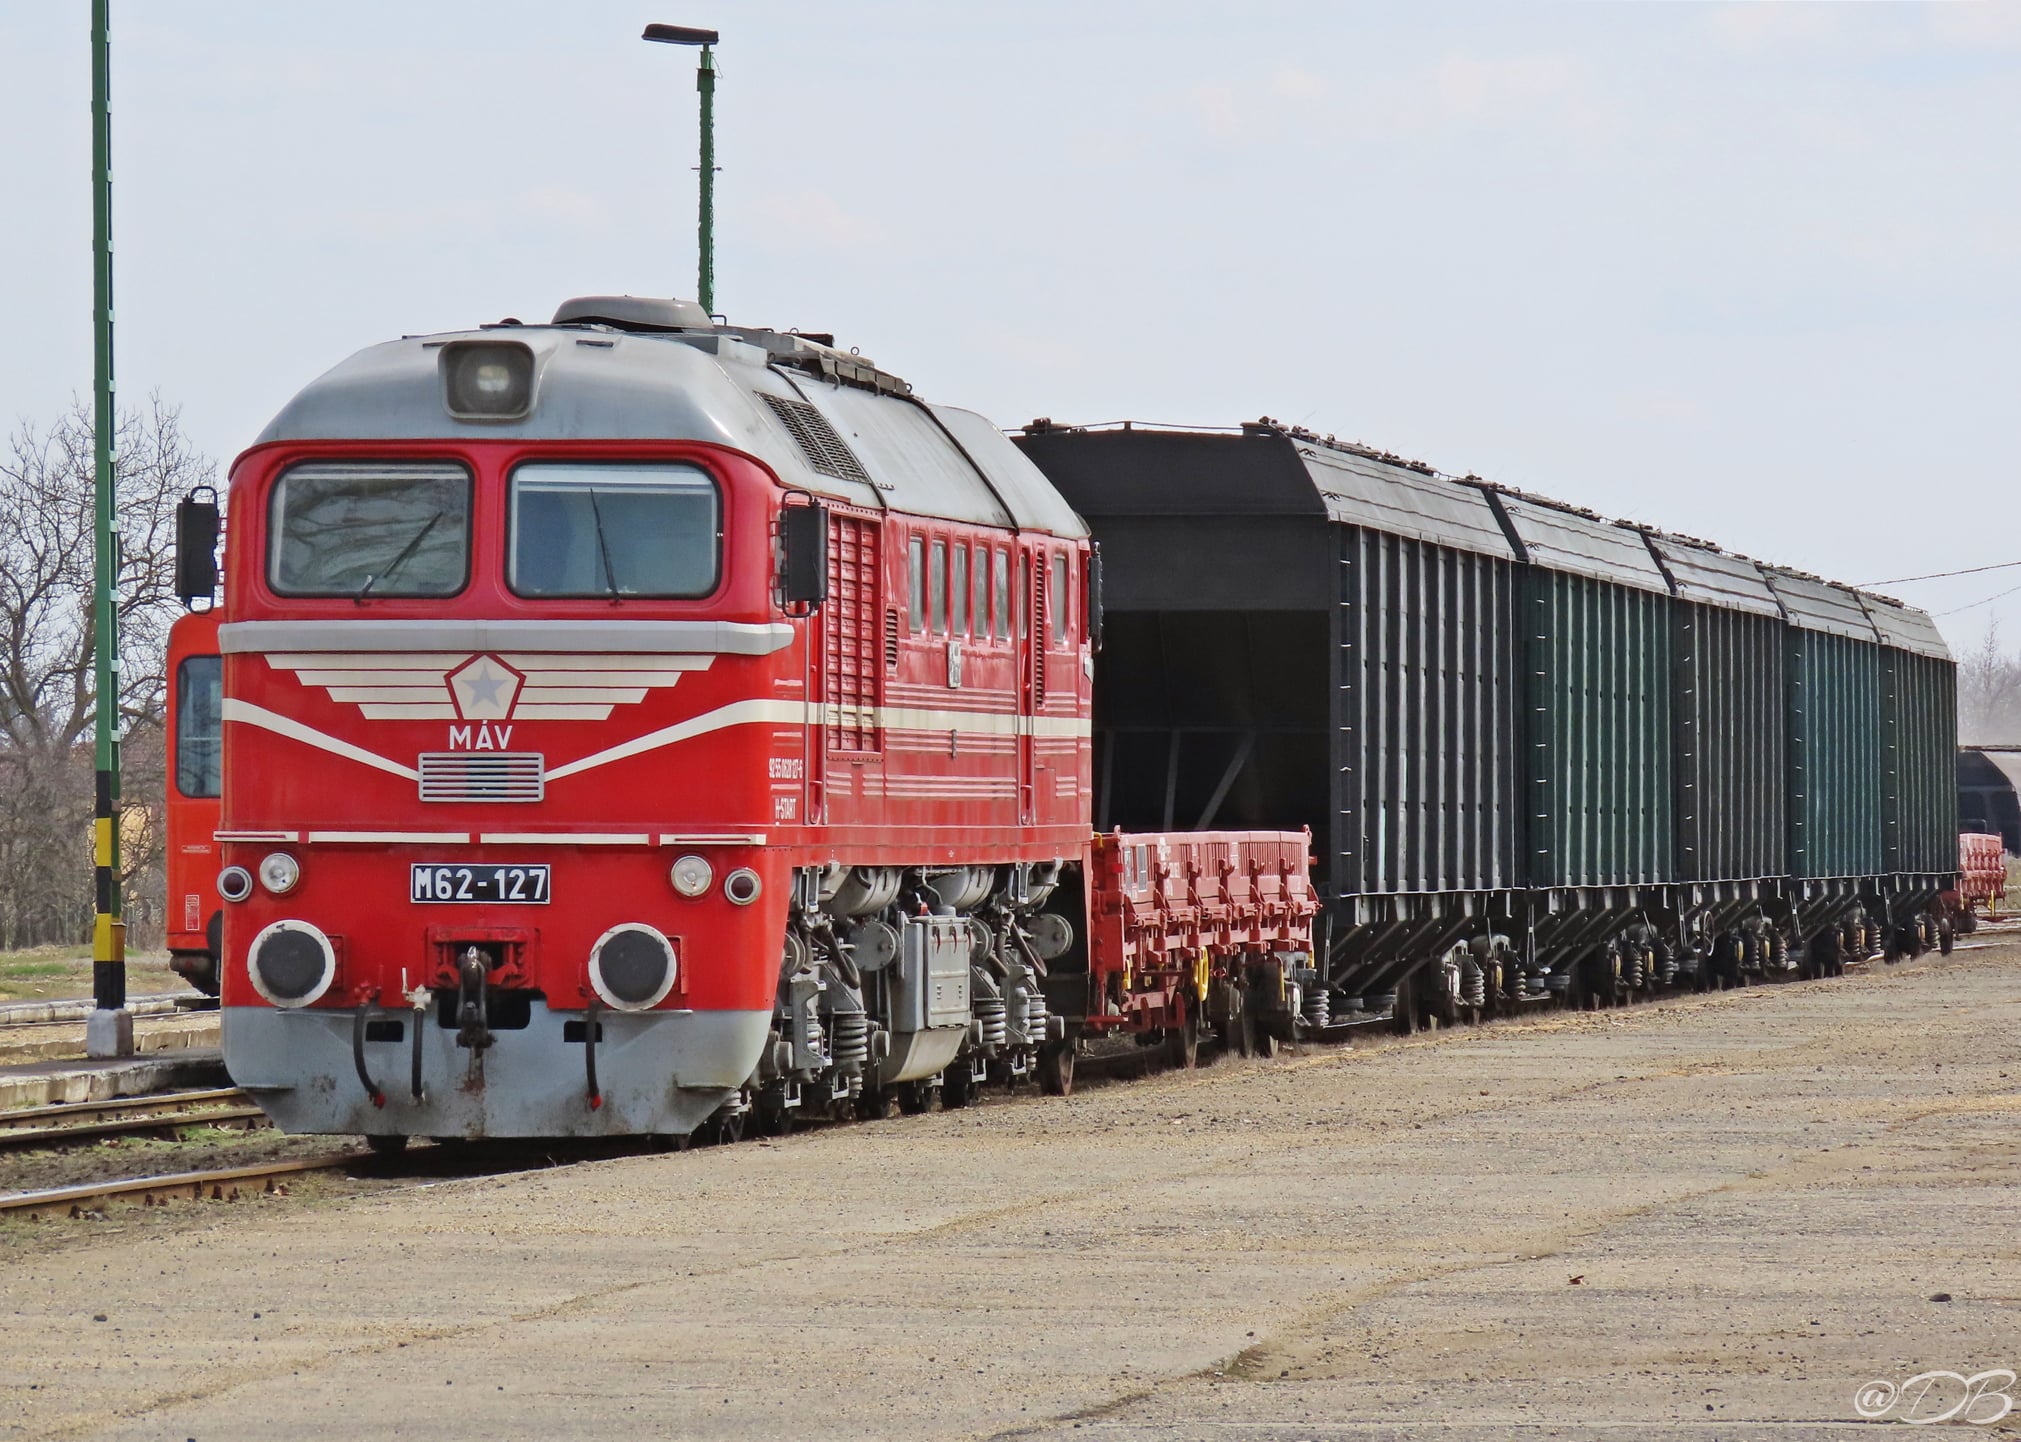 Többek között az M62 127-es Szergej dübörgésétől is hangos lesz majd a 81-es vonal (fotó: Magyarországi Vonatok Képekben Facebook-oldal)